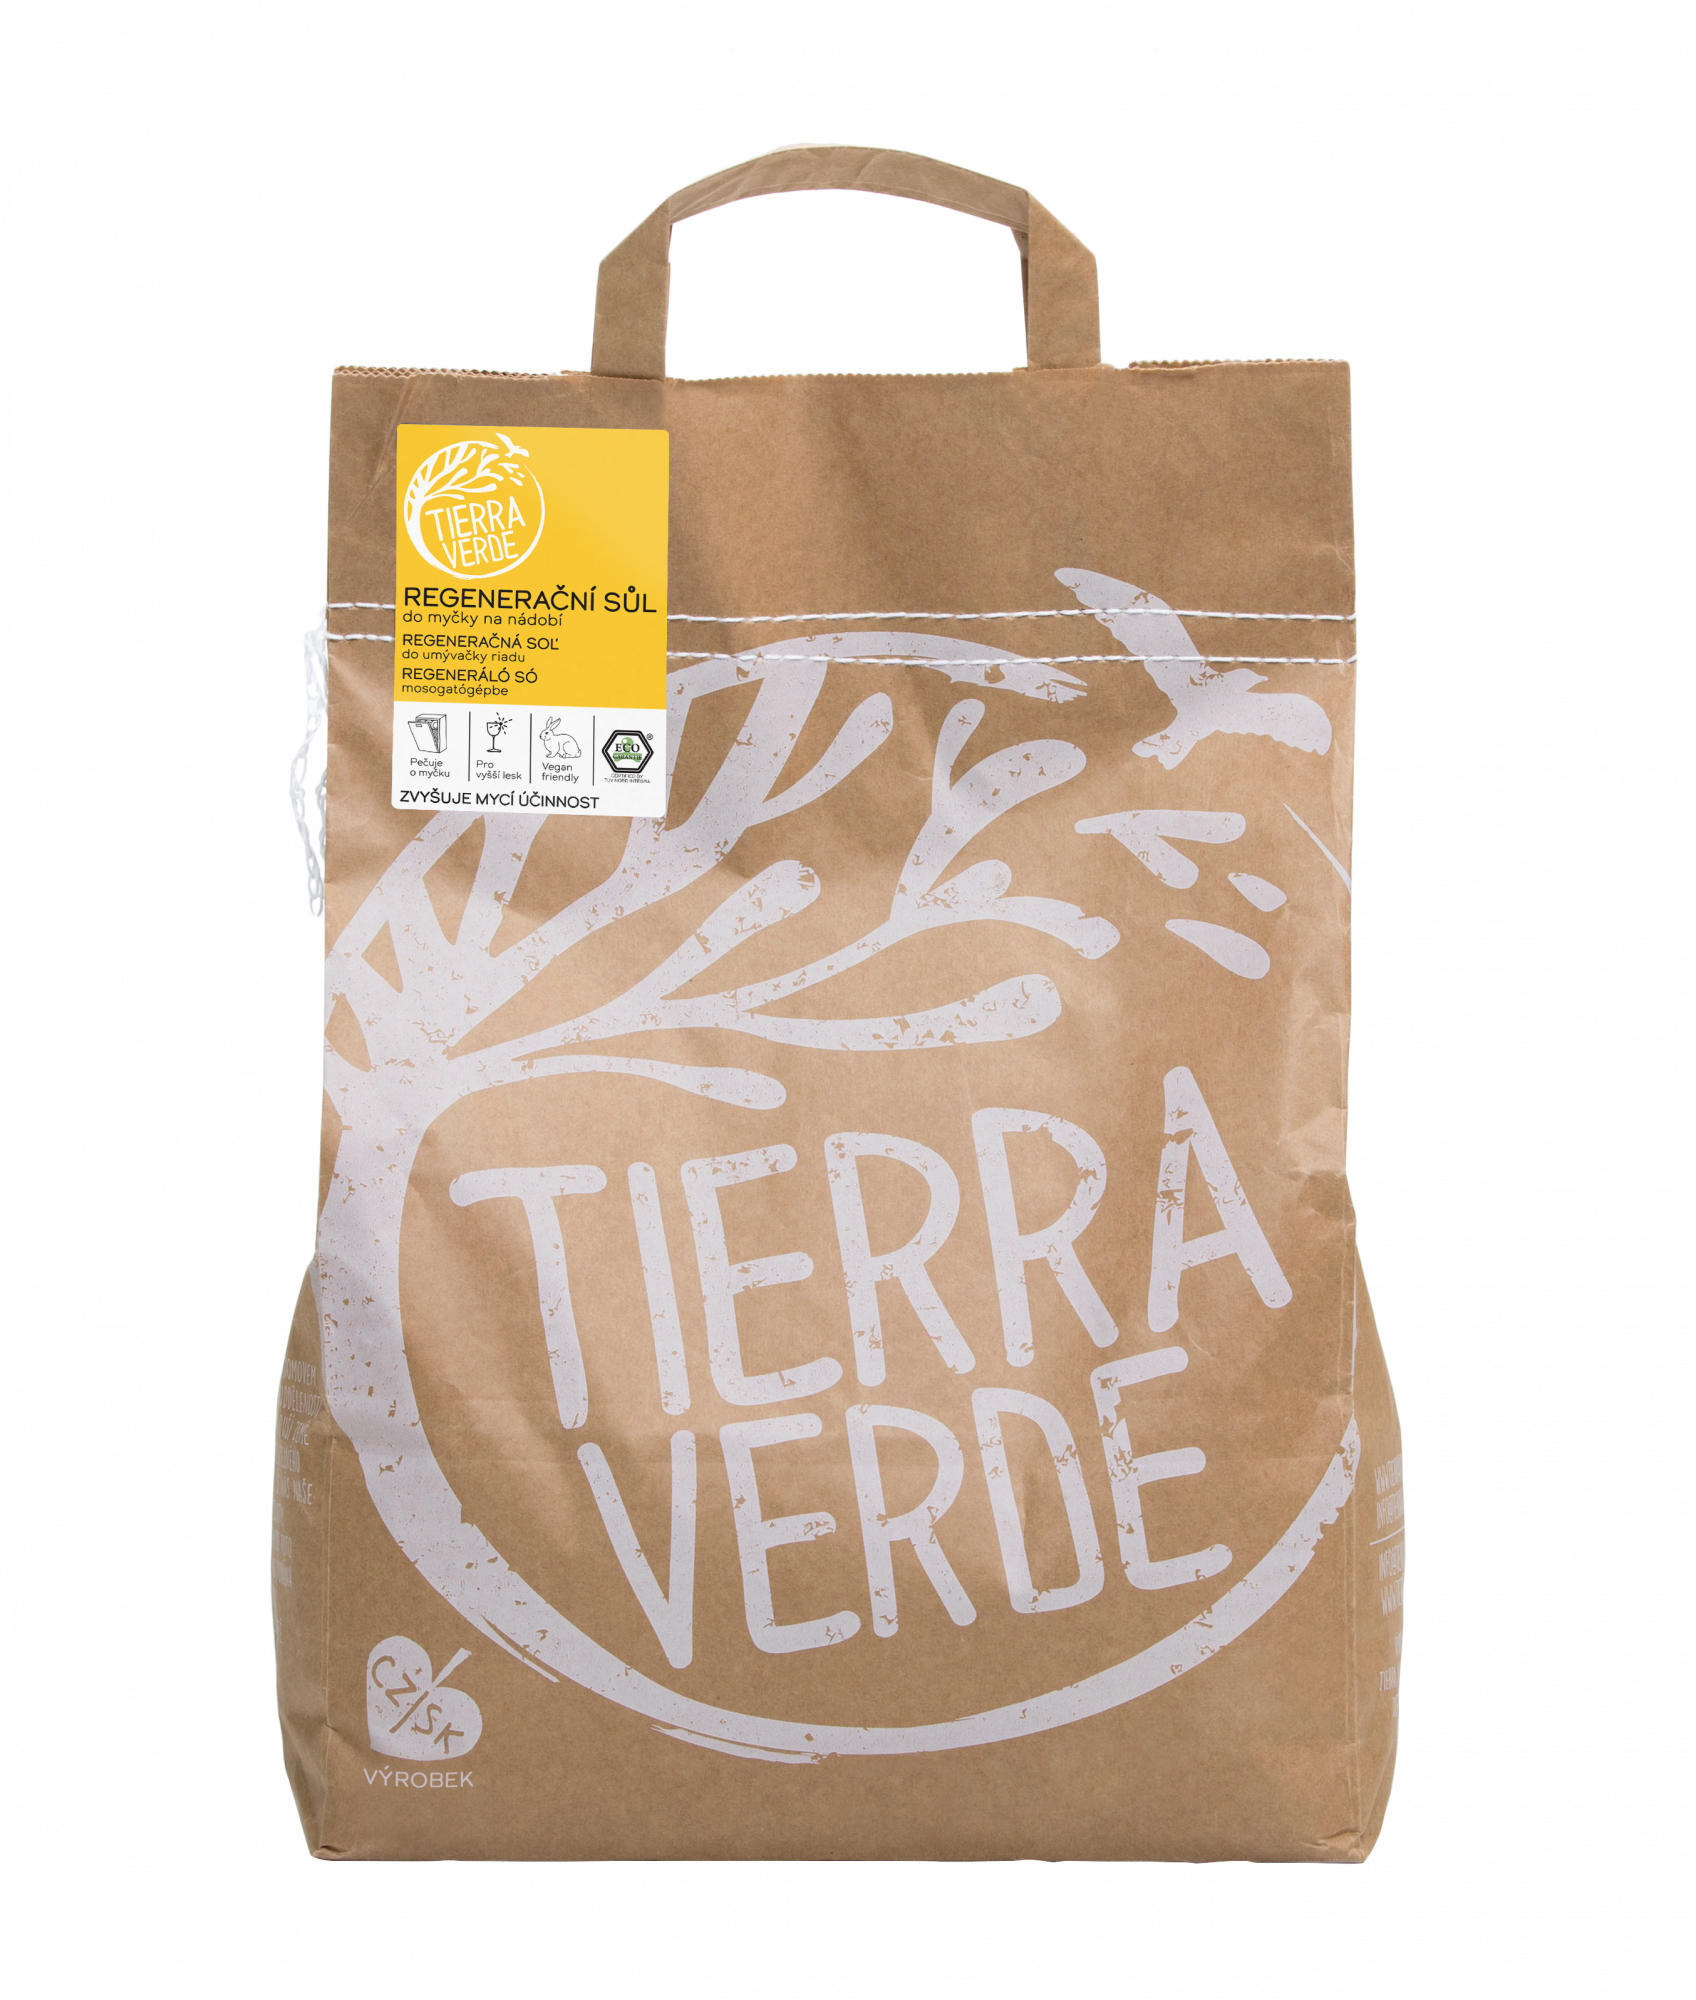 Tierra Verde Sůl do myčky - INOVACE 5 kg - zabraňuje usazování vodního kamene